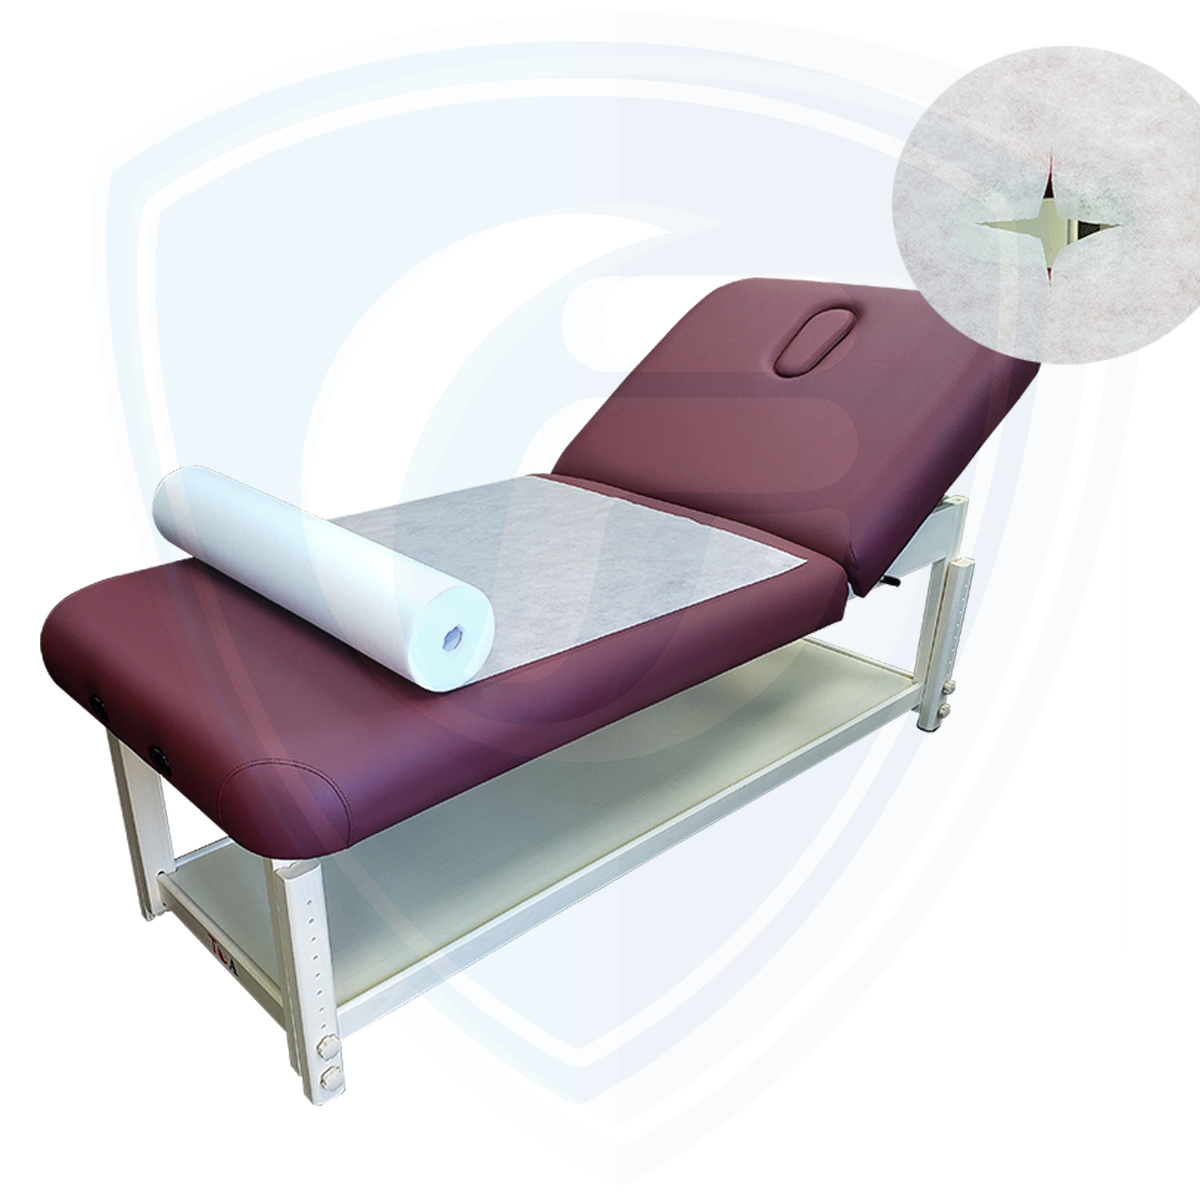 Draps jetables de haute qualité pour table de massage et spa